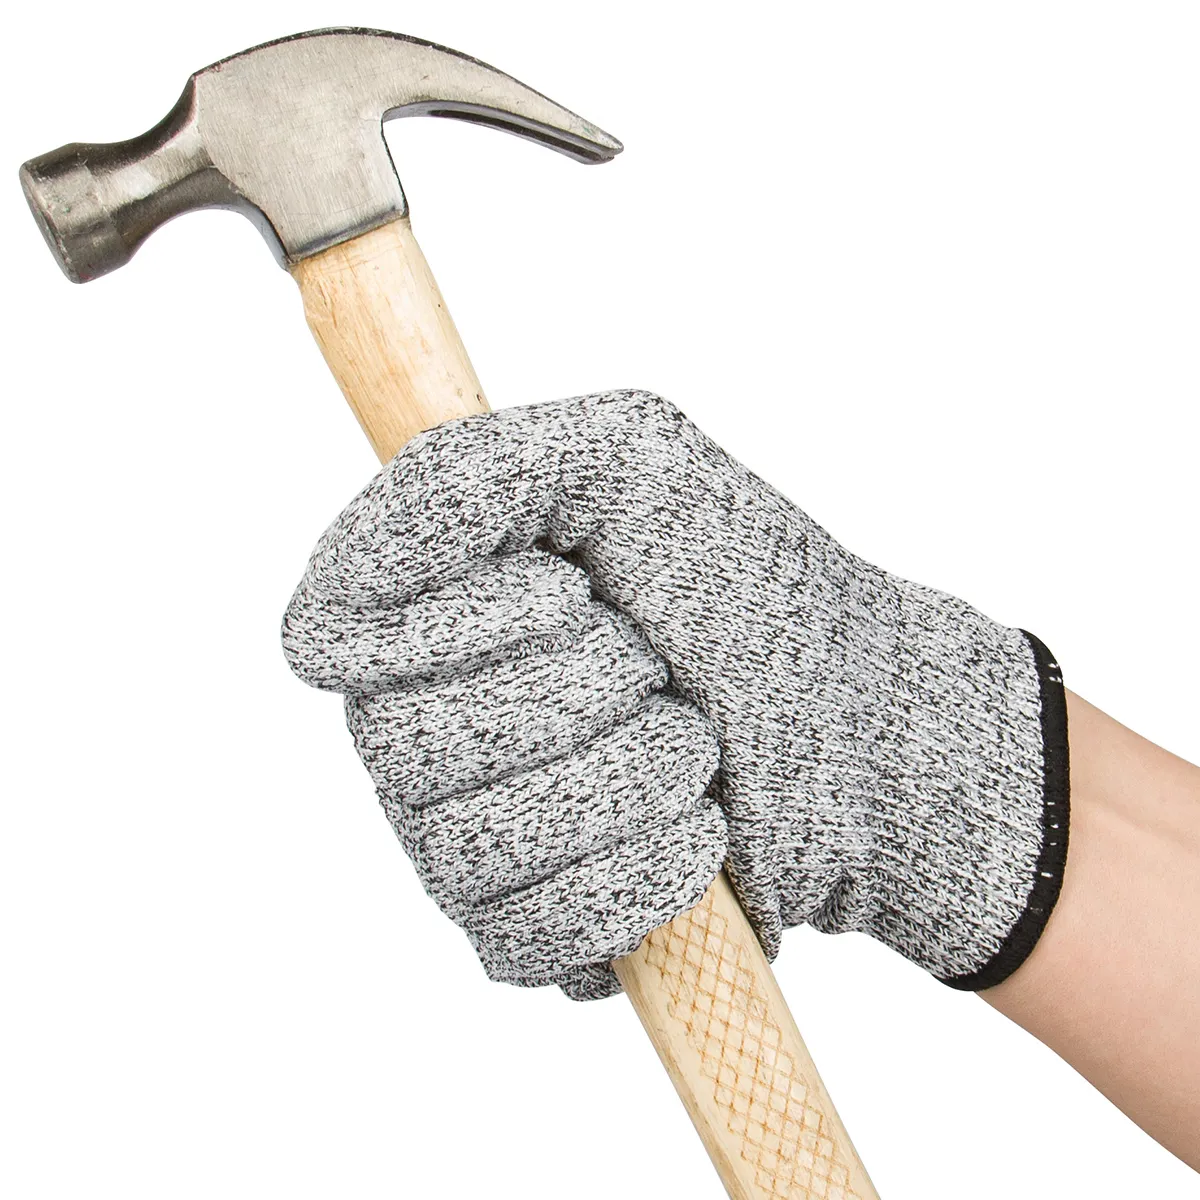 hochwertige industrielle handschuhe sicherheit kundenspezifische flexible schutzhandschuhe mit hohem einfluss